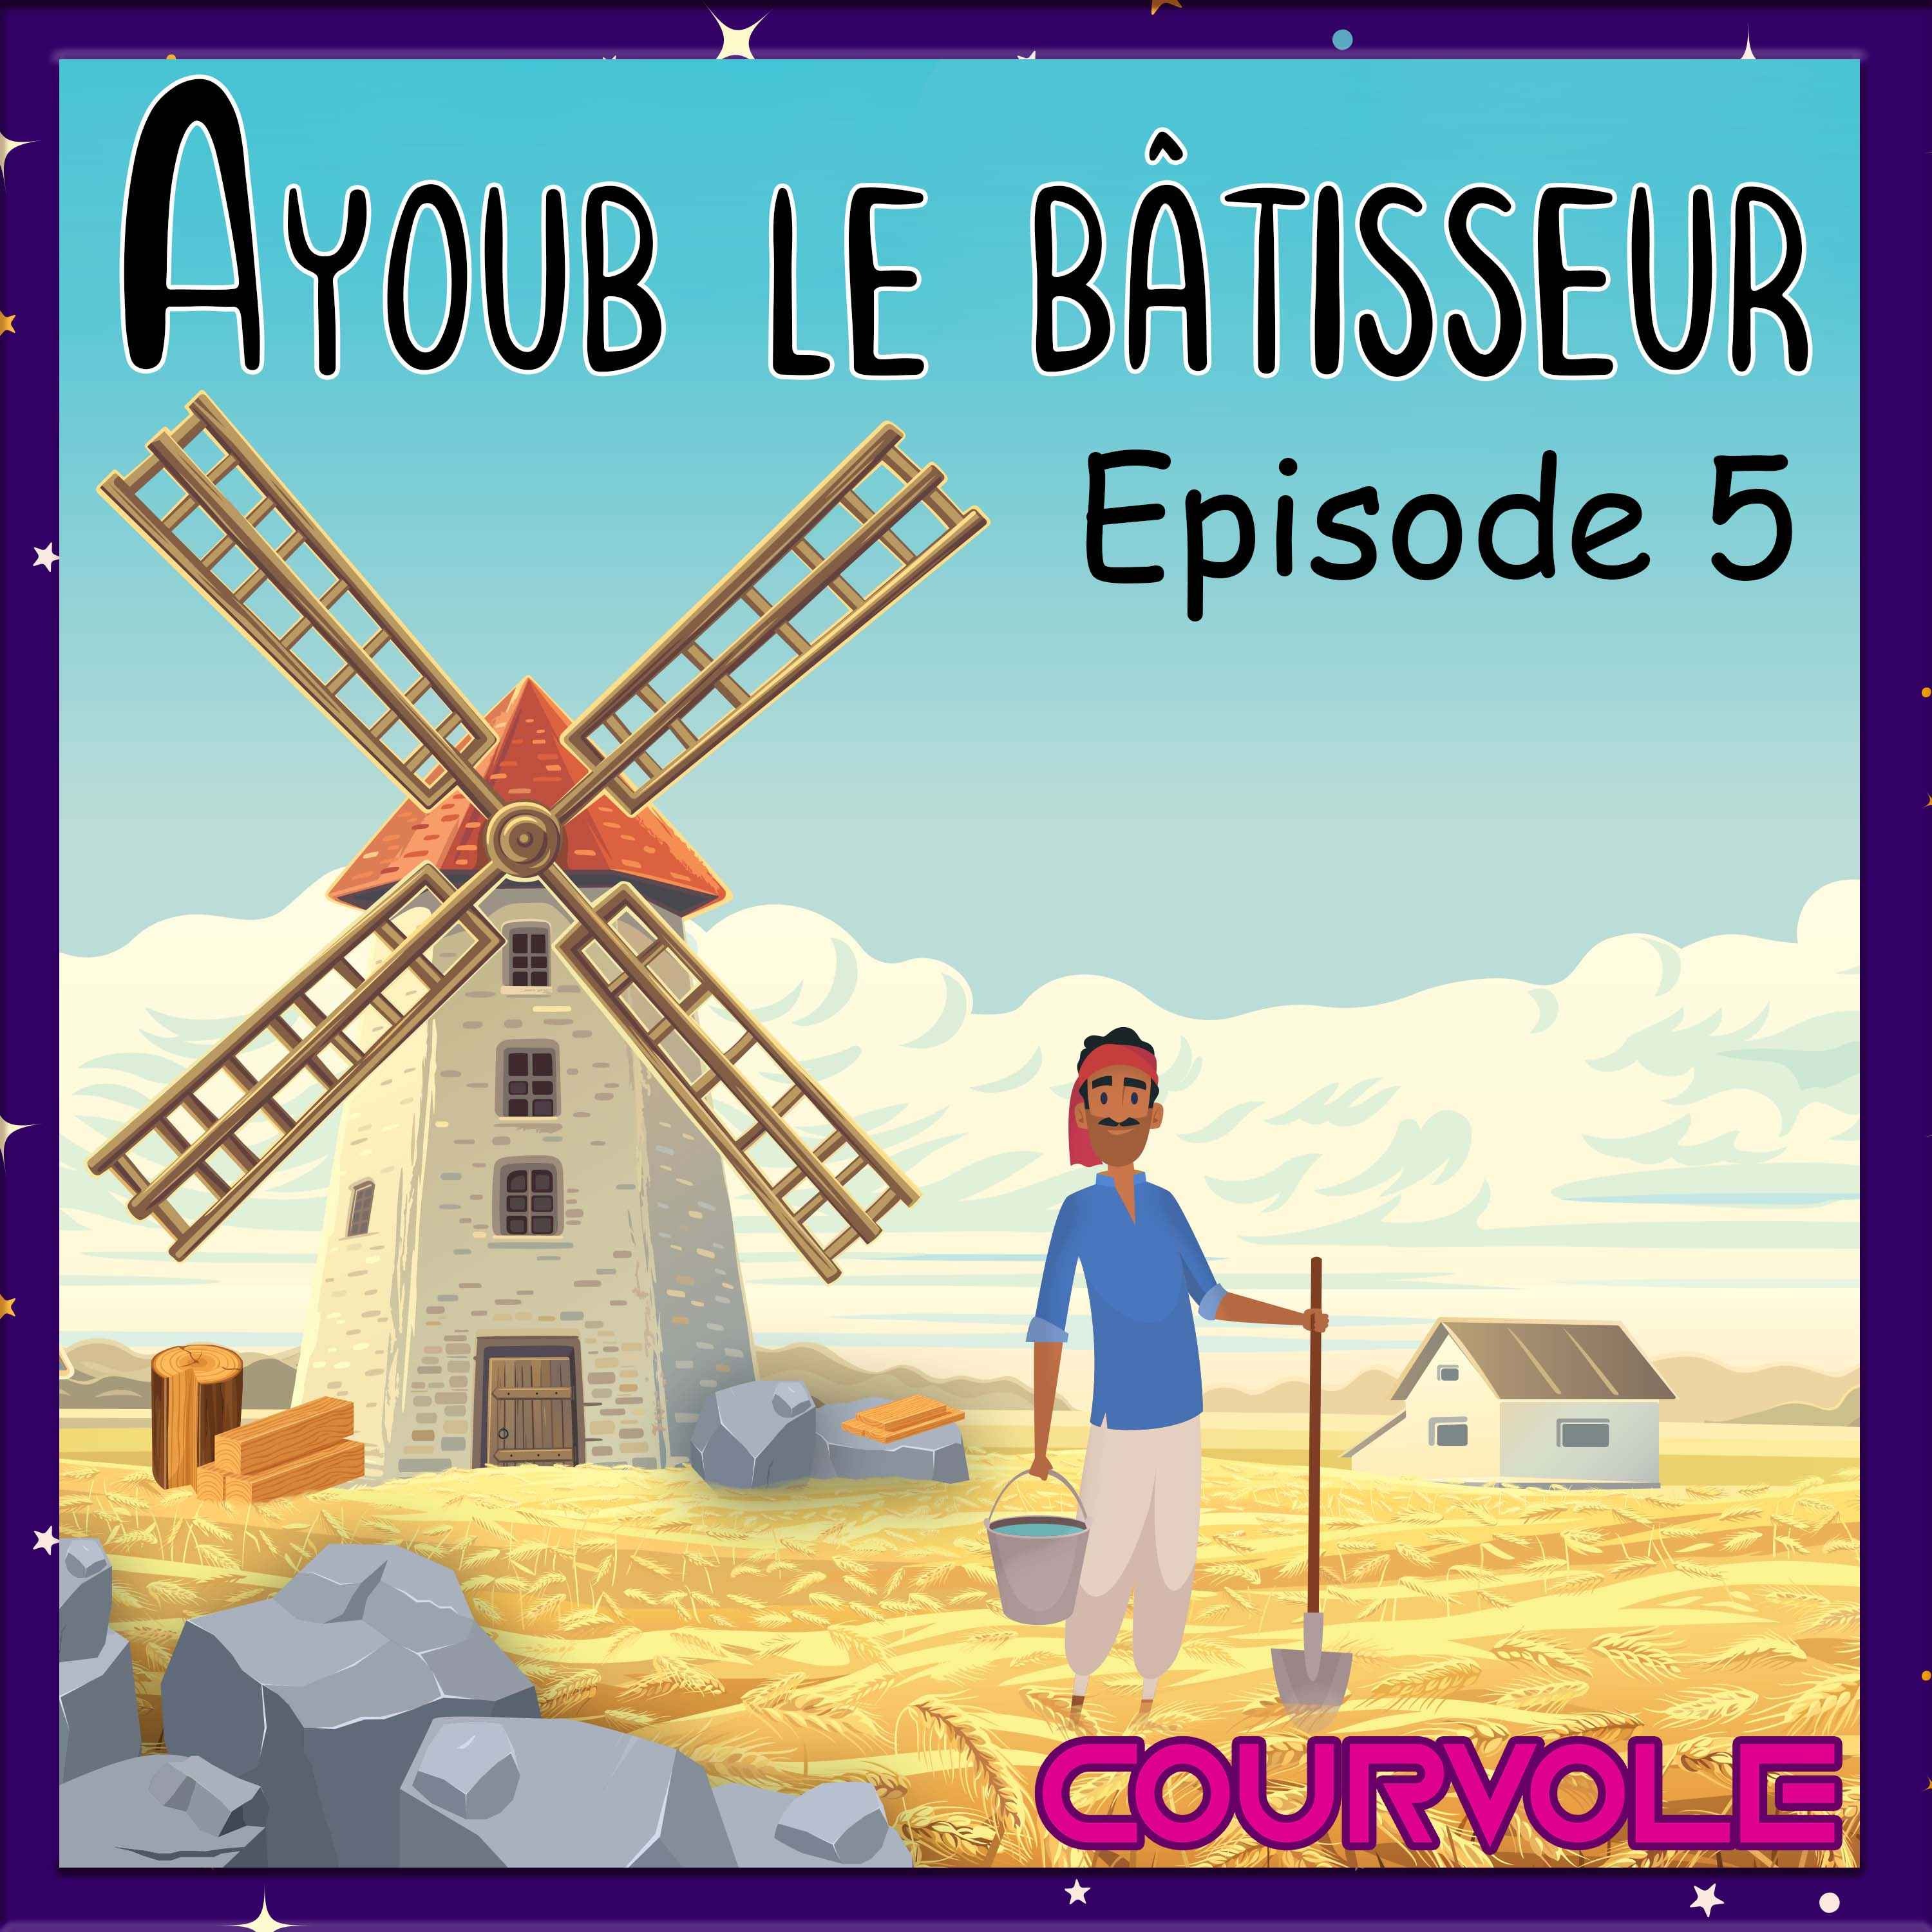 Ayoub le bâtisseur - Episode 5 Image